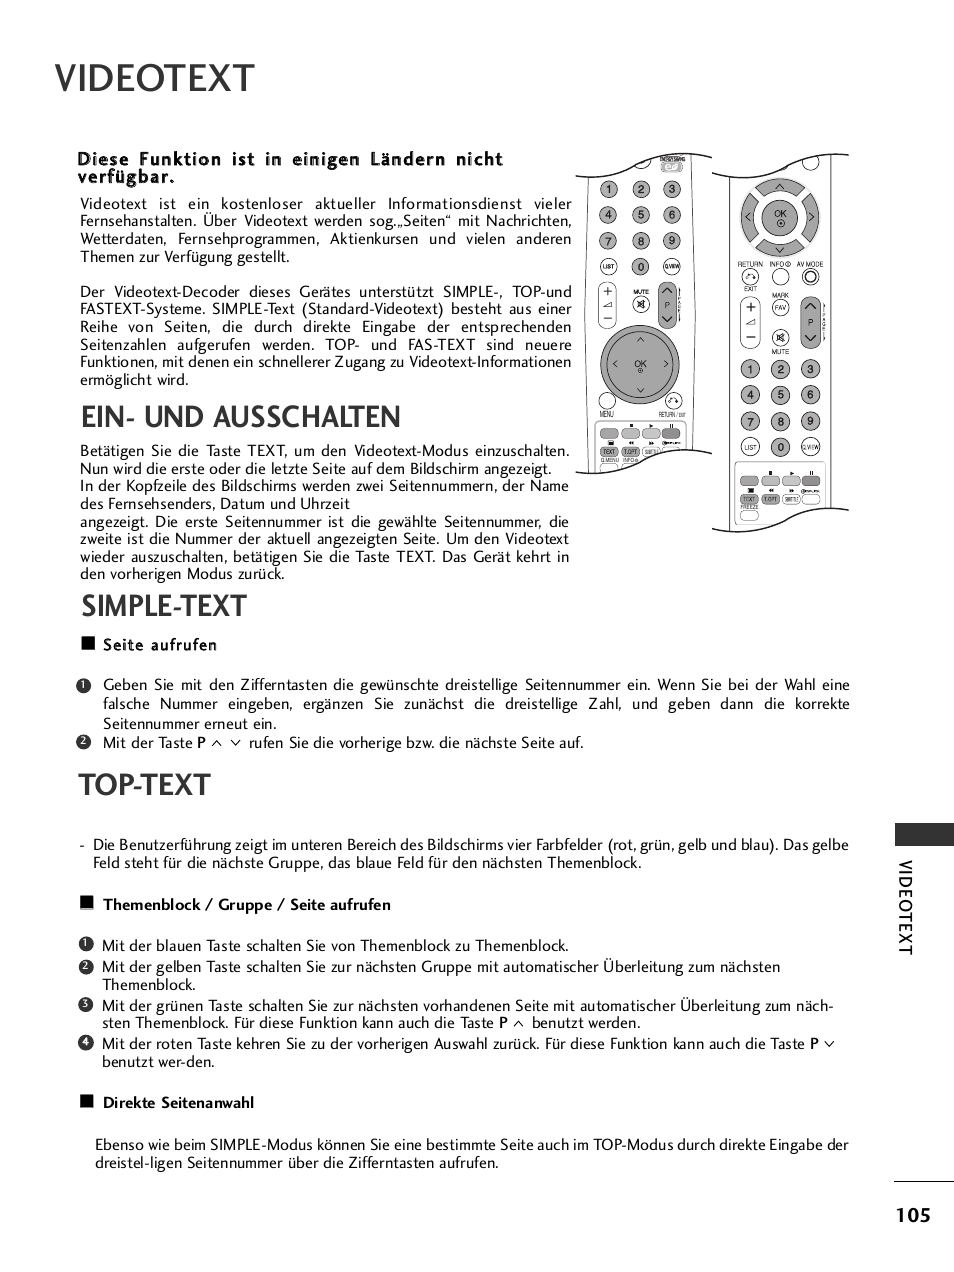 Videotext, Ein- und ausschalten, Simple-text | Top-text, Video text | LG 42PQ1100 Benutzerhandbuch | Seite 107 / 124